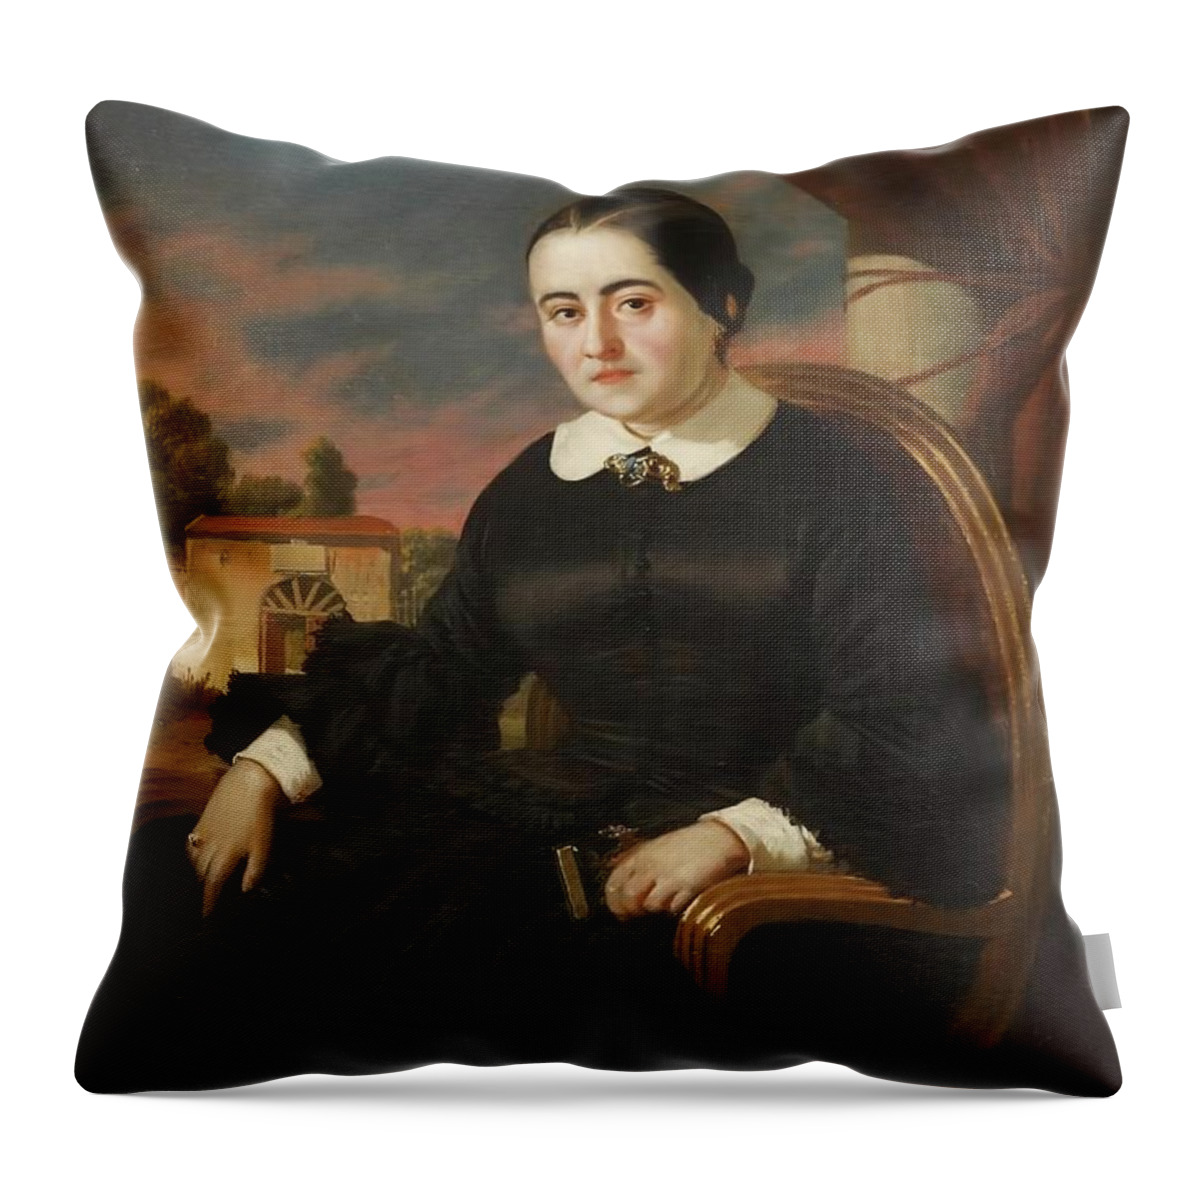 Becquer Valeriano Throw Pillow featuring the painting Retrato de Cecilia Bohl de Faber, 1858. Oleo sobre lienzo, 50,30 x 37,50 cm. by Valeriano Dominguez Becquer -1834-1870-